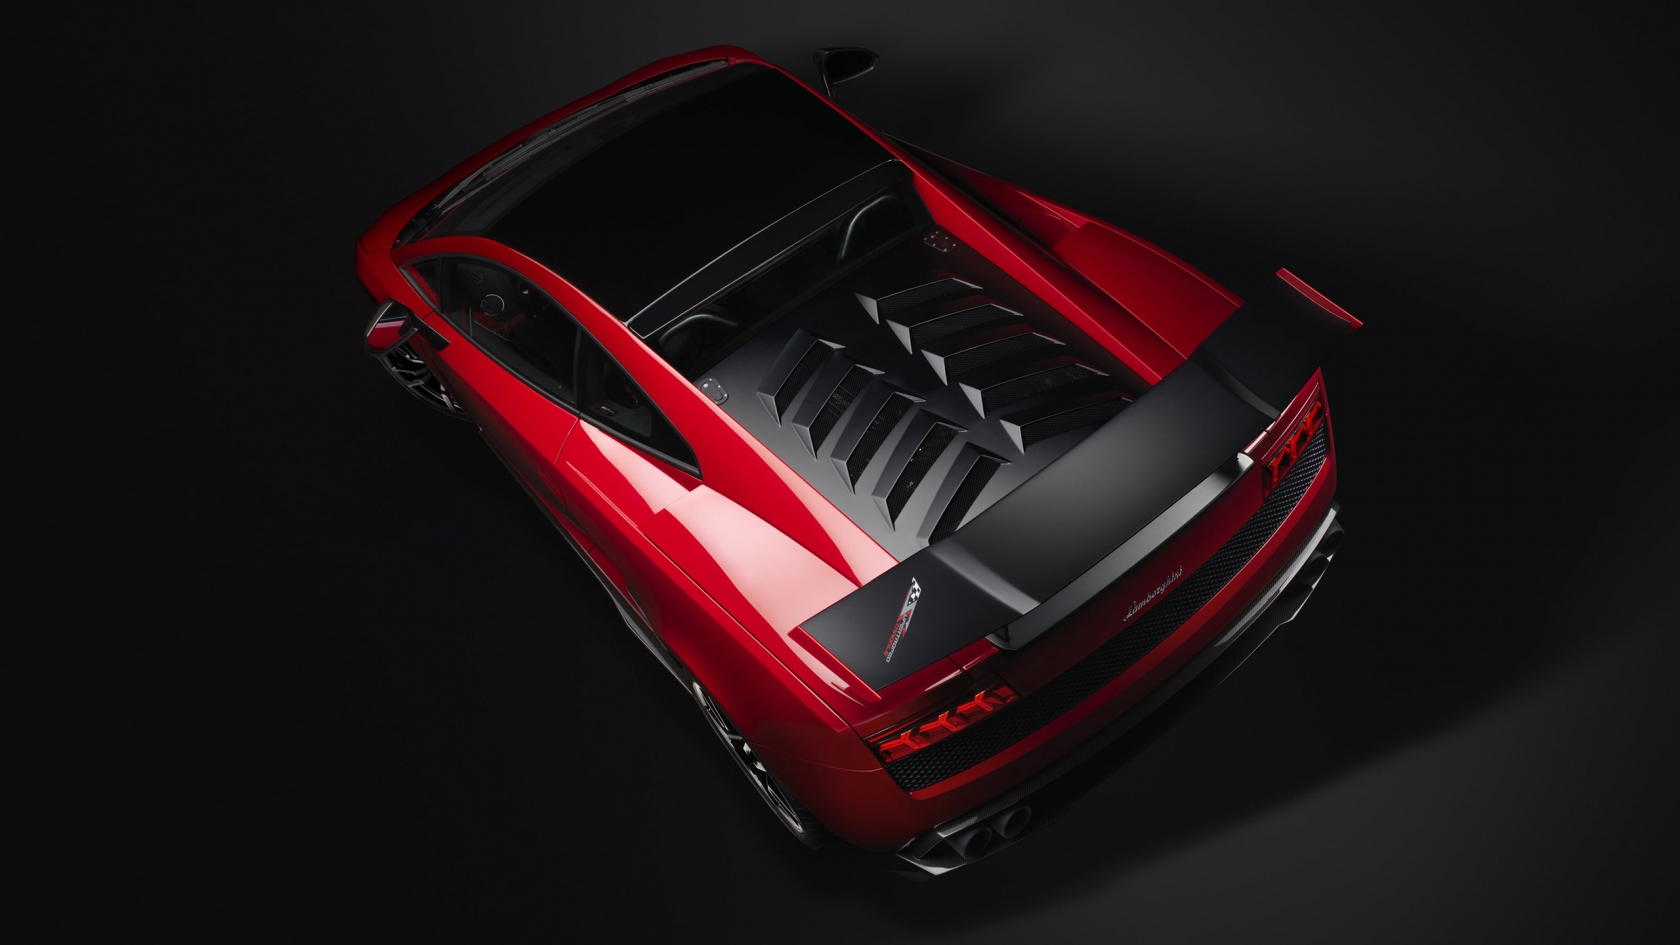 Red Lamborghini Gallardo Stradale for 1680 x 945 HDTV resolution